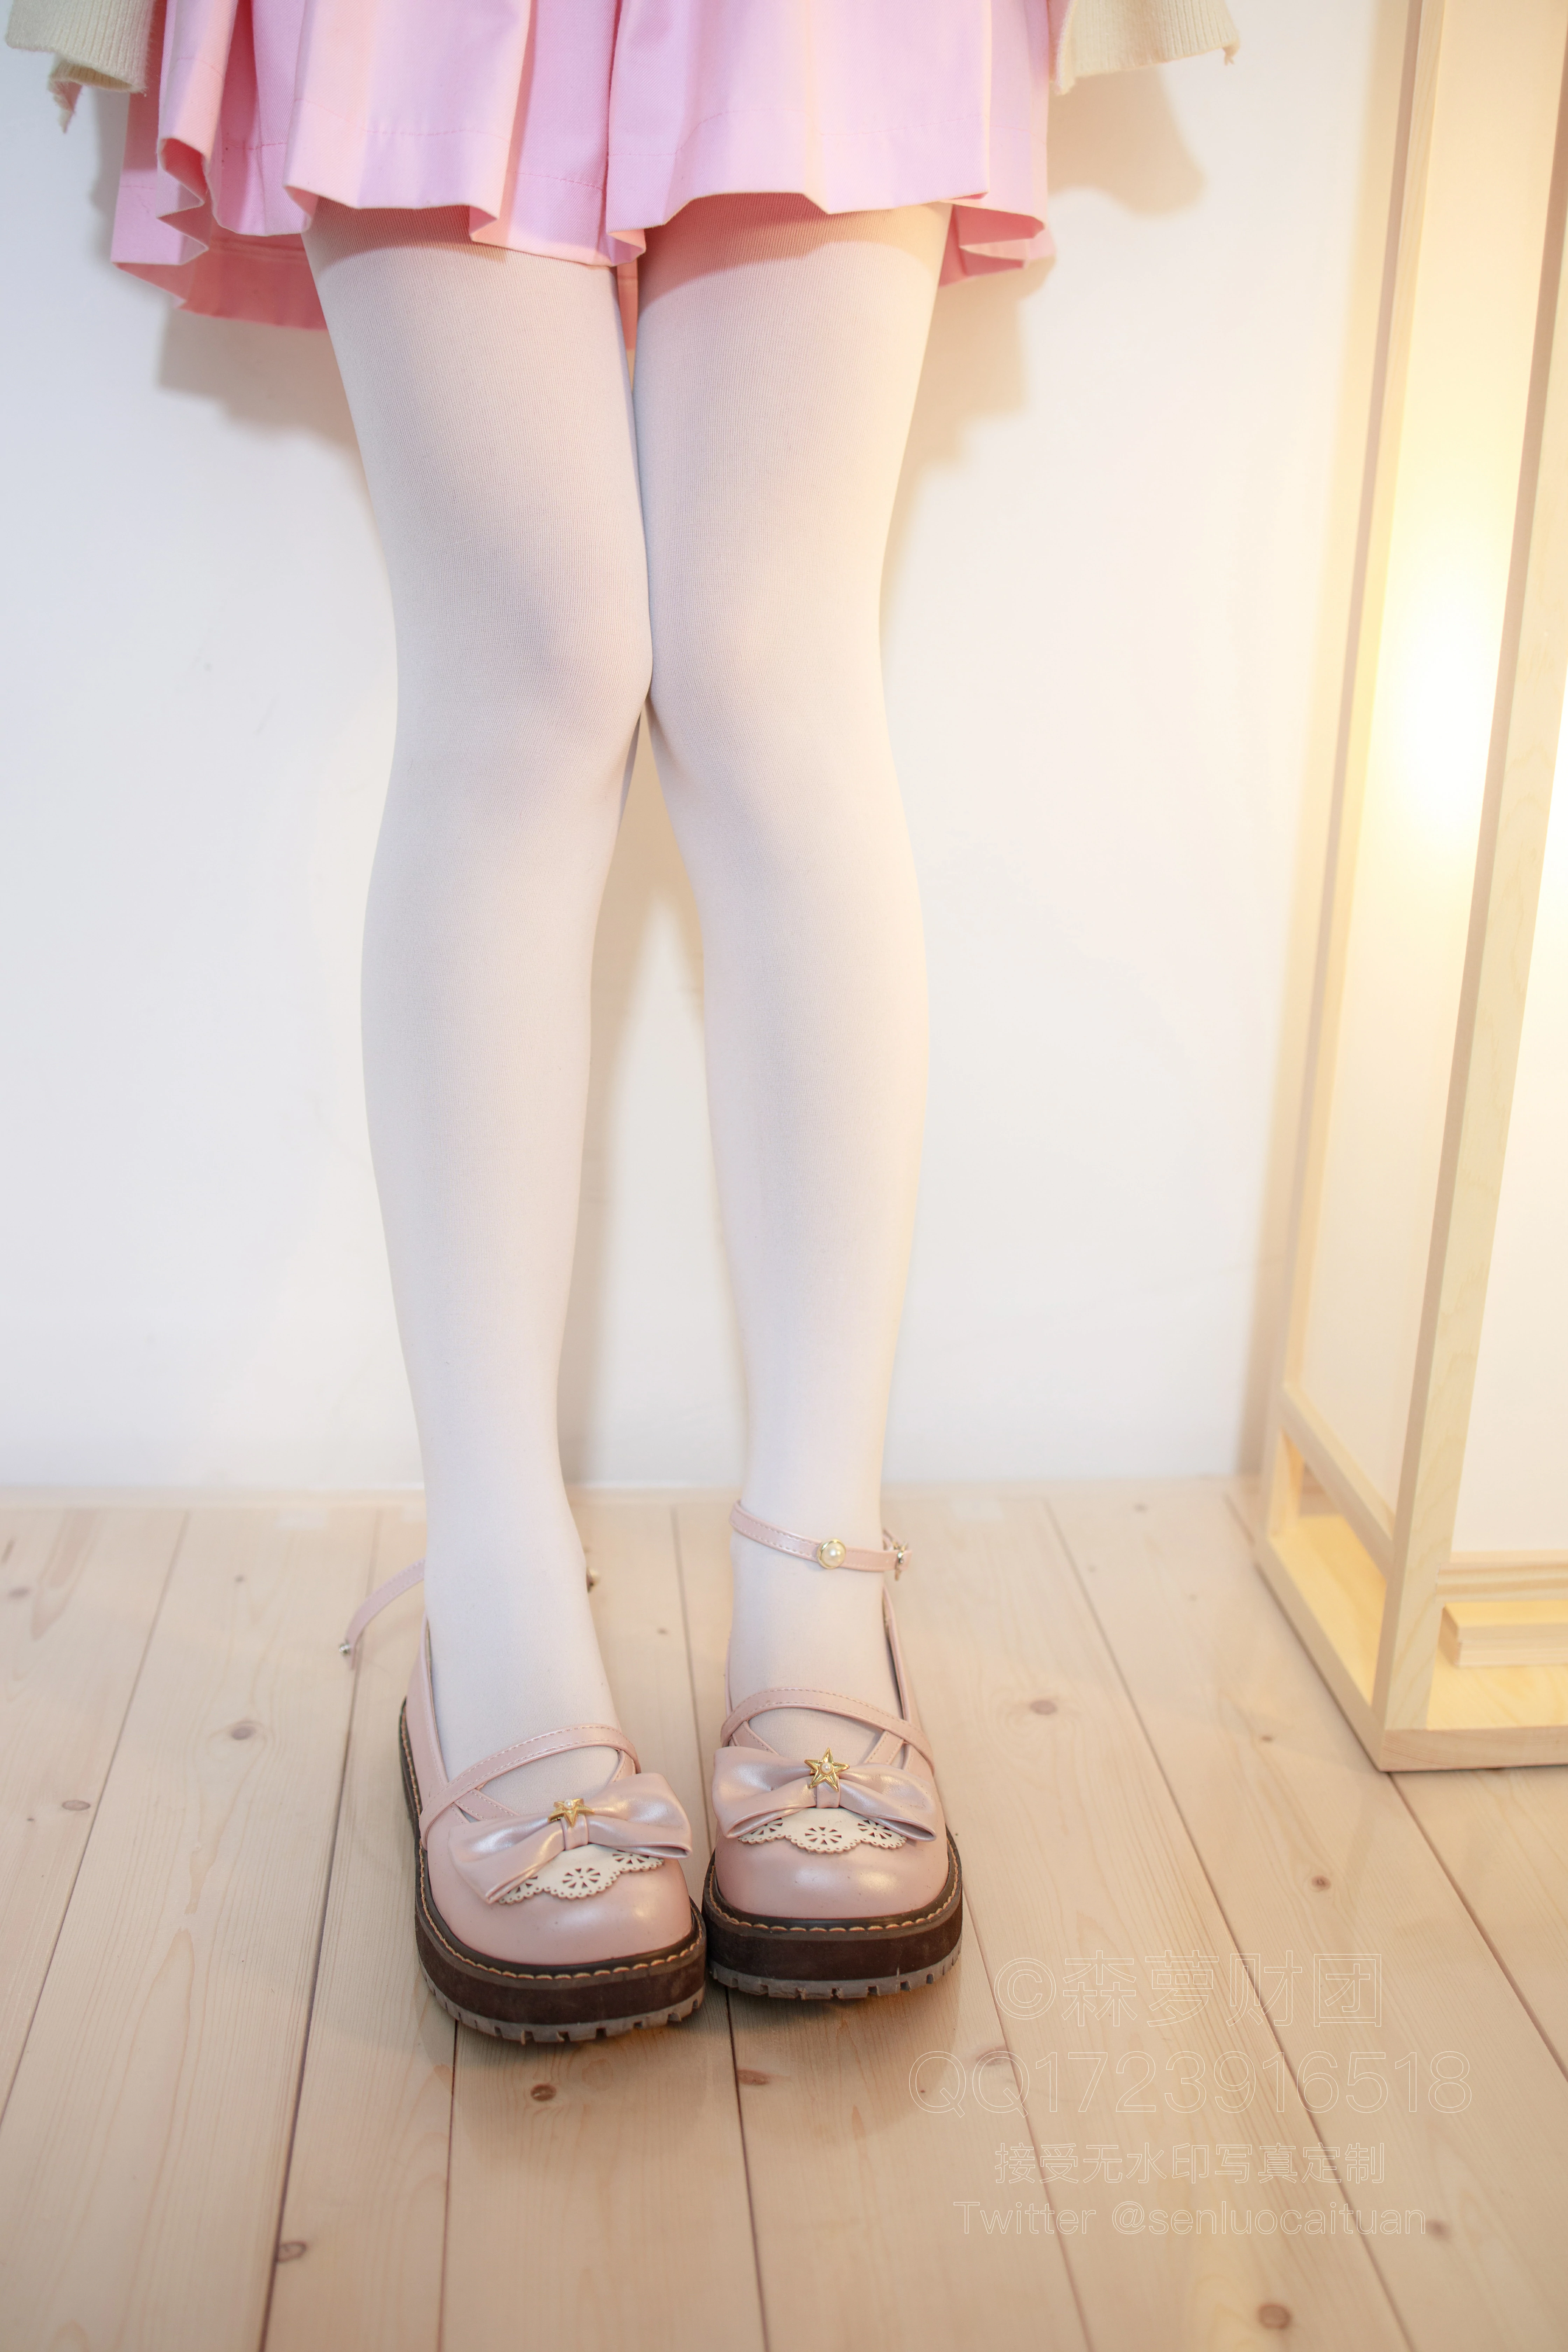 [森萝财团]X-059 清纯可爱小萝莉 粉色连衣裙加白色丝袜美腿玉足性感私房写真集,